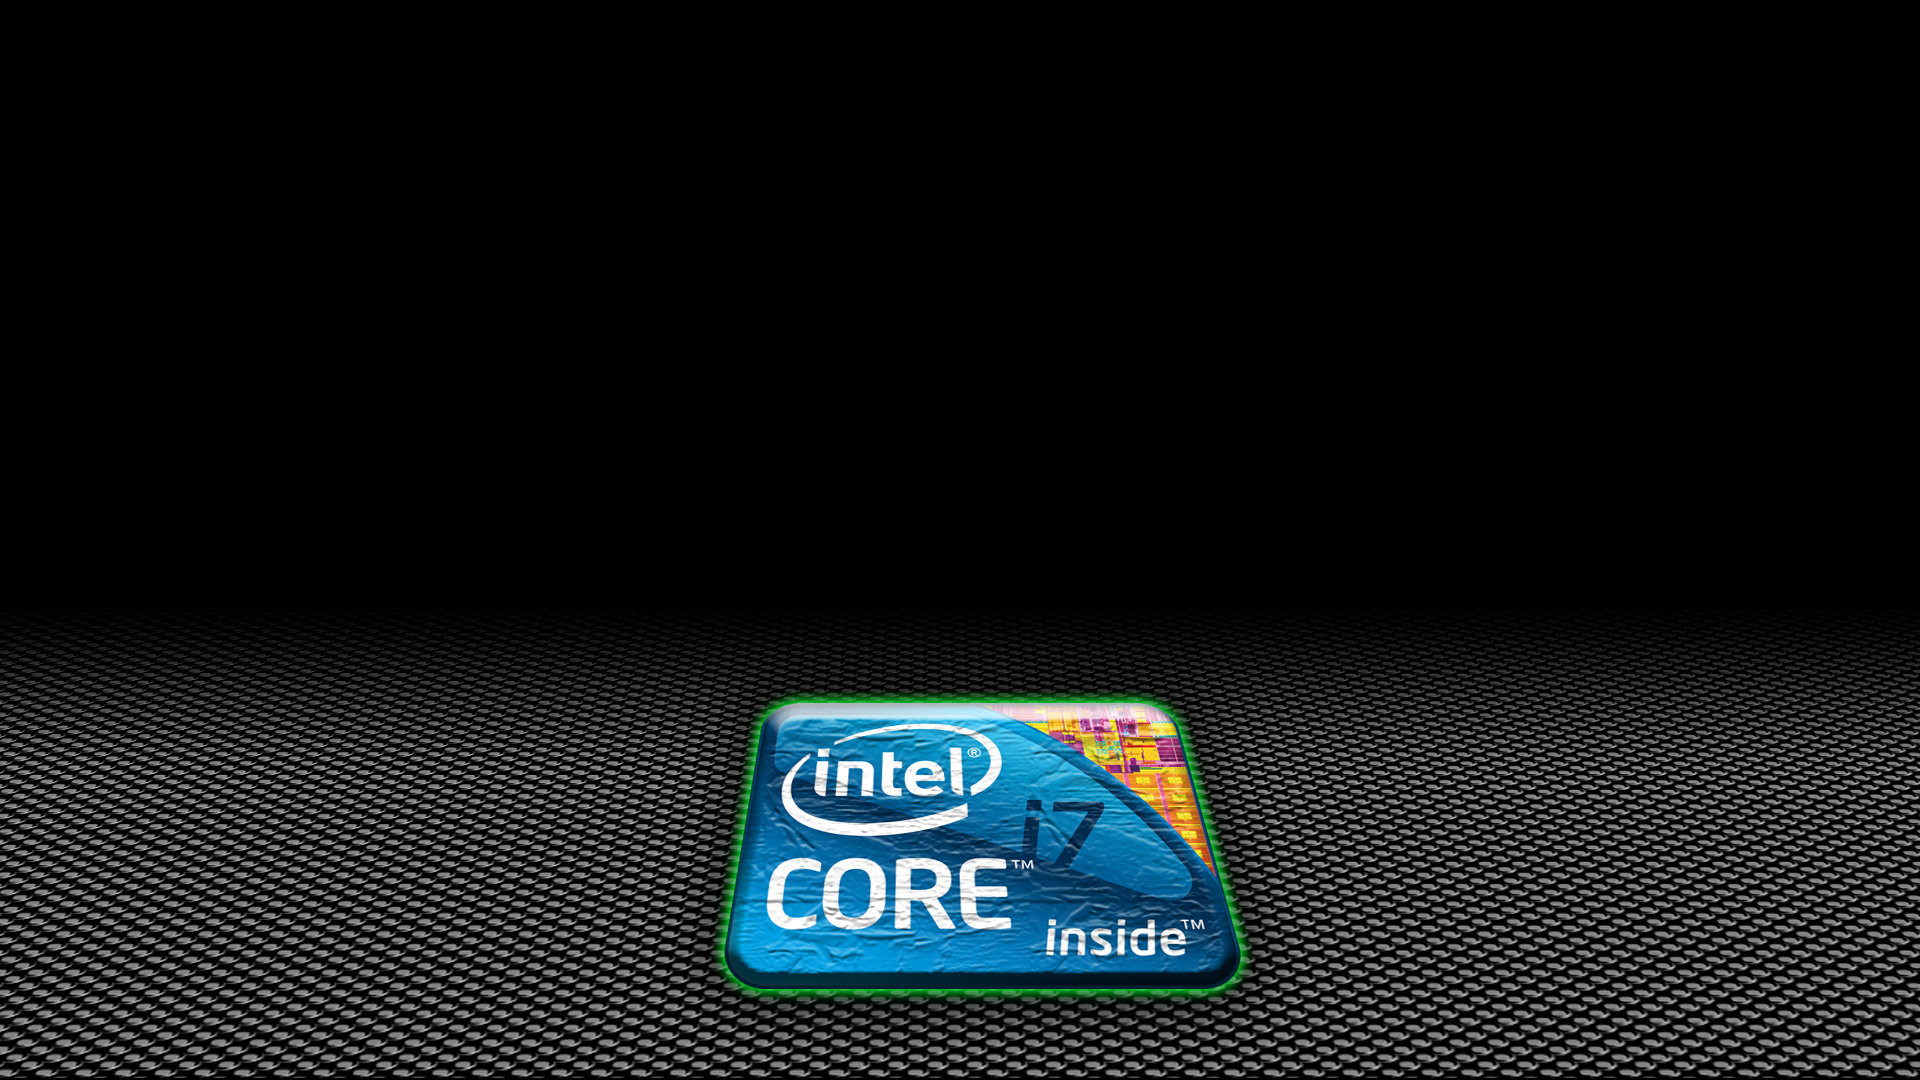 1920x1080 Intel Quad Core I7 HD Wallpaper. Download Wallpaper Wallpaper ...